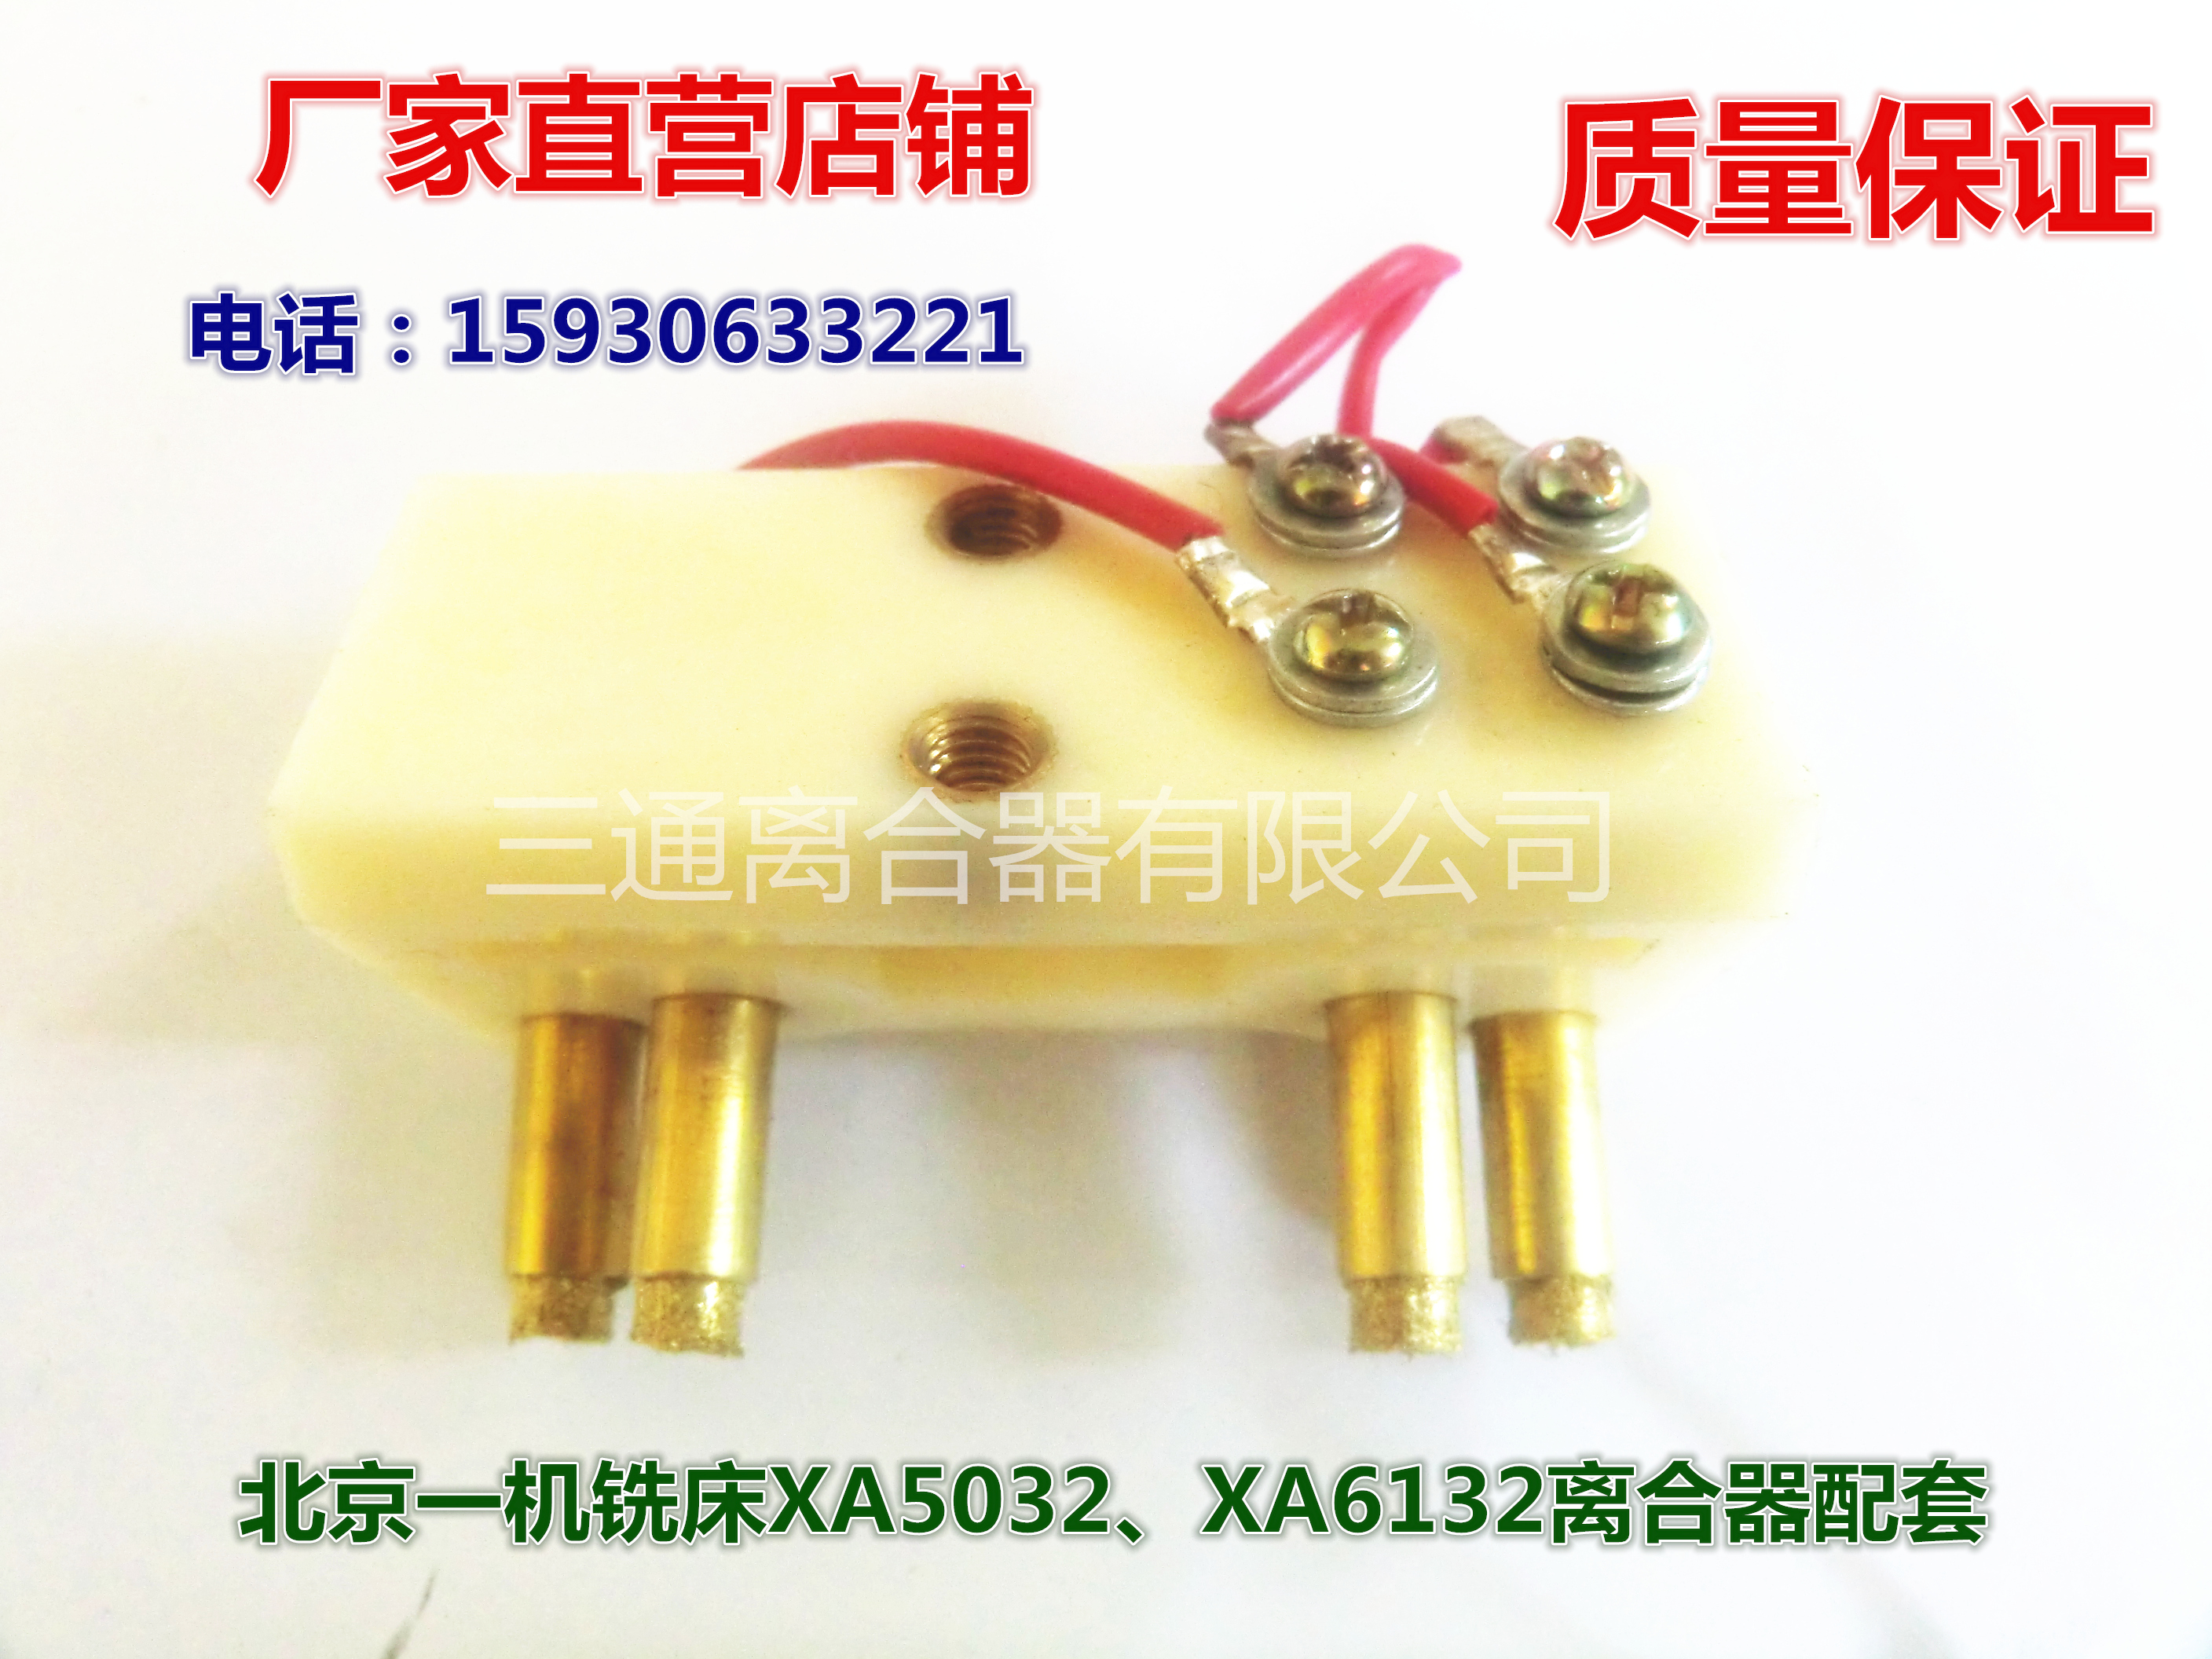 四头电刷、碳刷 北京一机铣床XA5032、XA6132双环电磁离合器配件